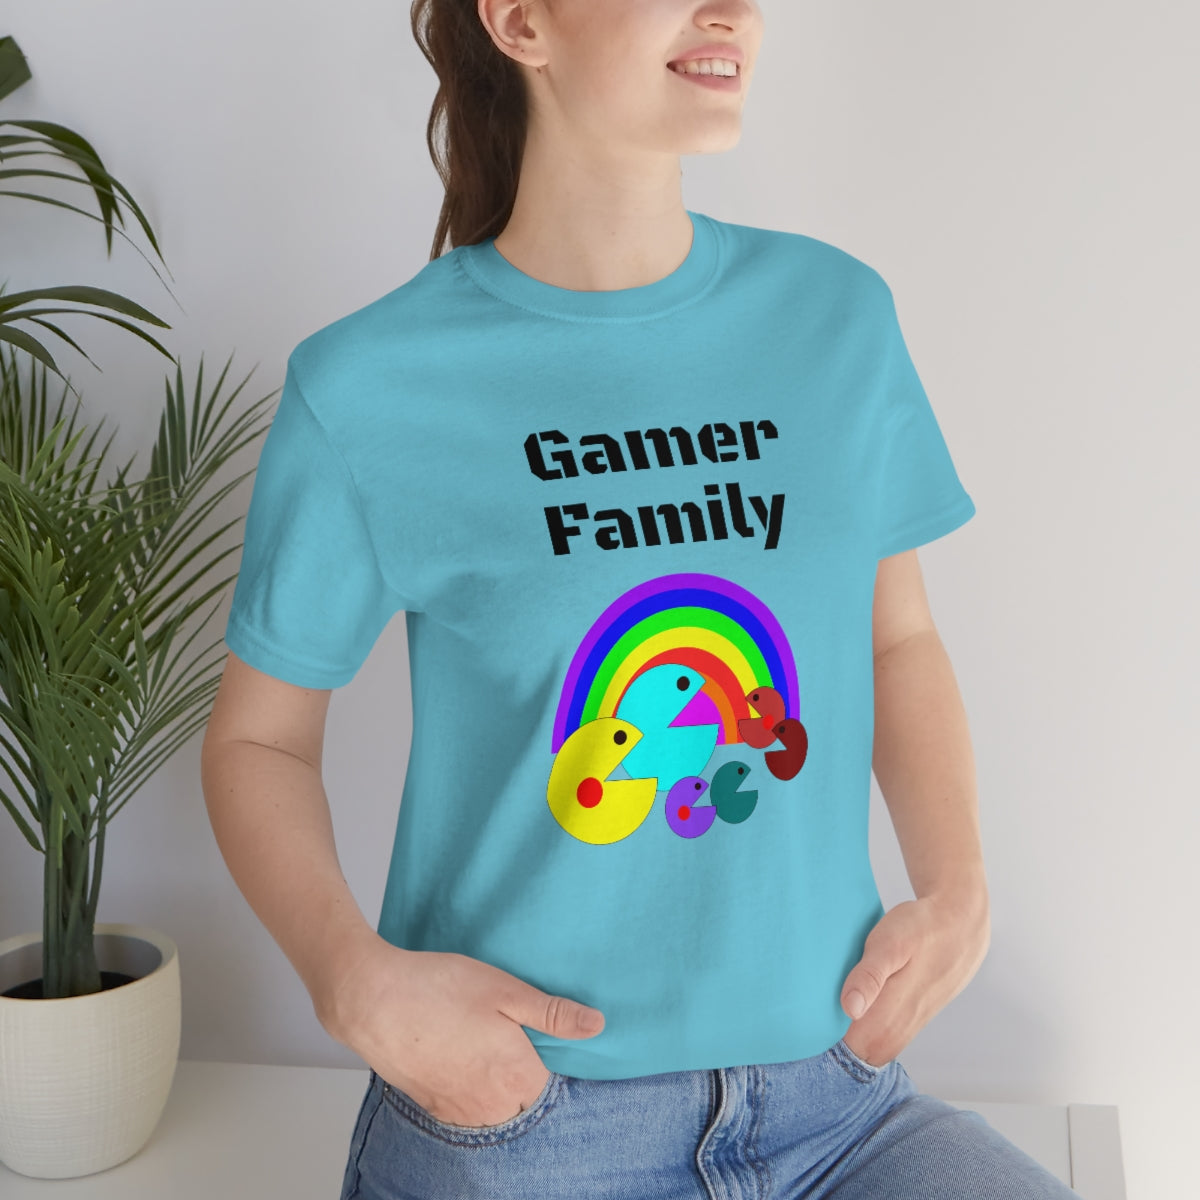 Gamer family - Funny Unisex Short Sleeve Tee.